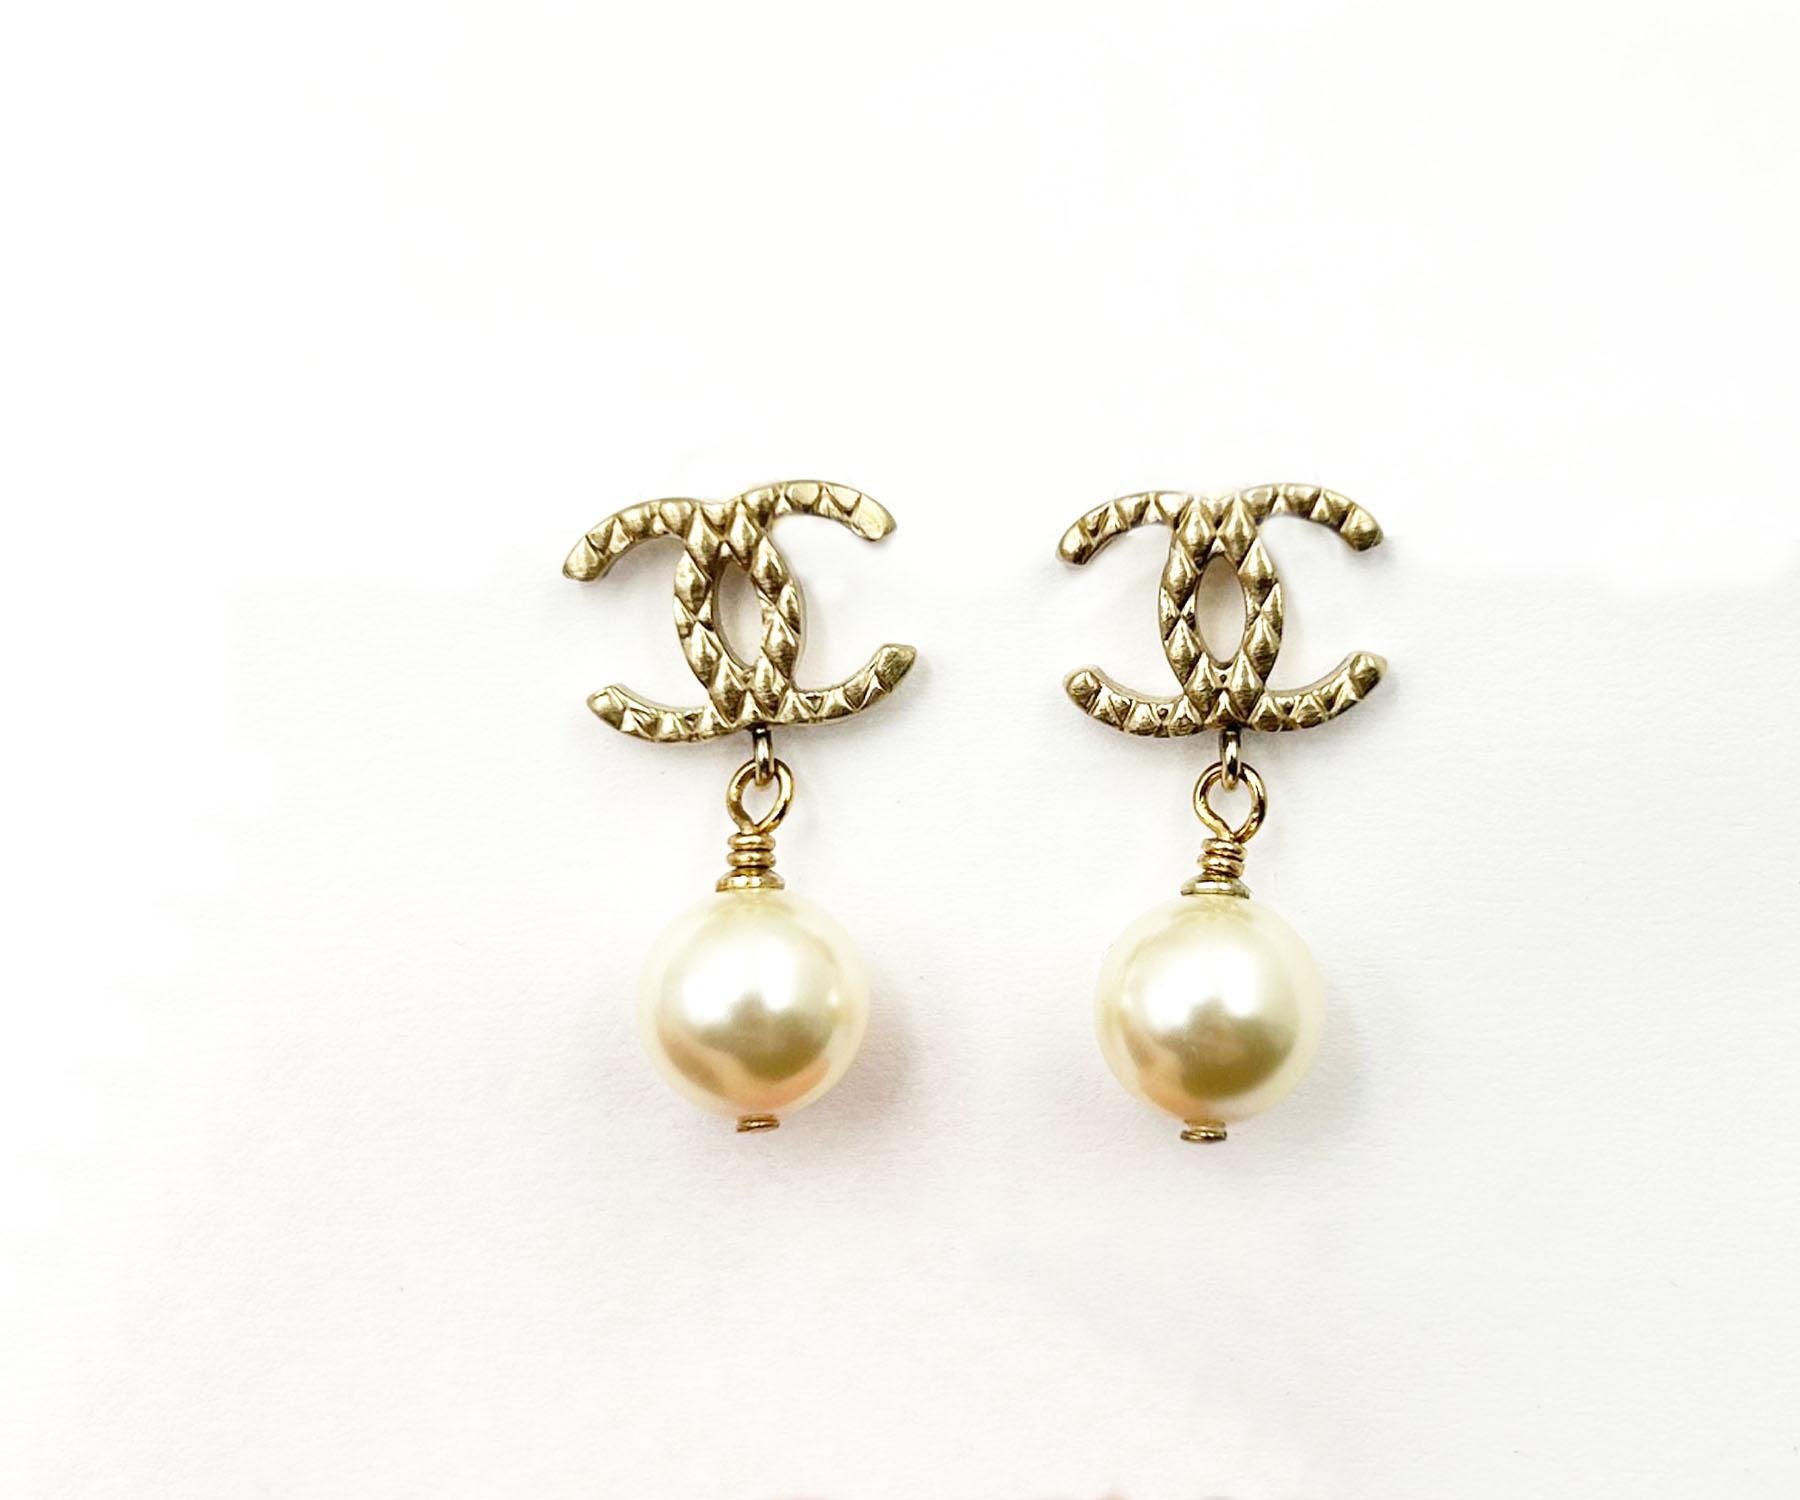 Chanel Klassisch Gold kariert CC Perle baumeln Piercing Ohrringe

*Markierung 11
*Hergestellt in Italien

- Sie ist etwa 1,1